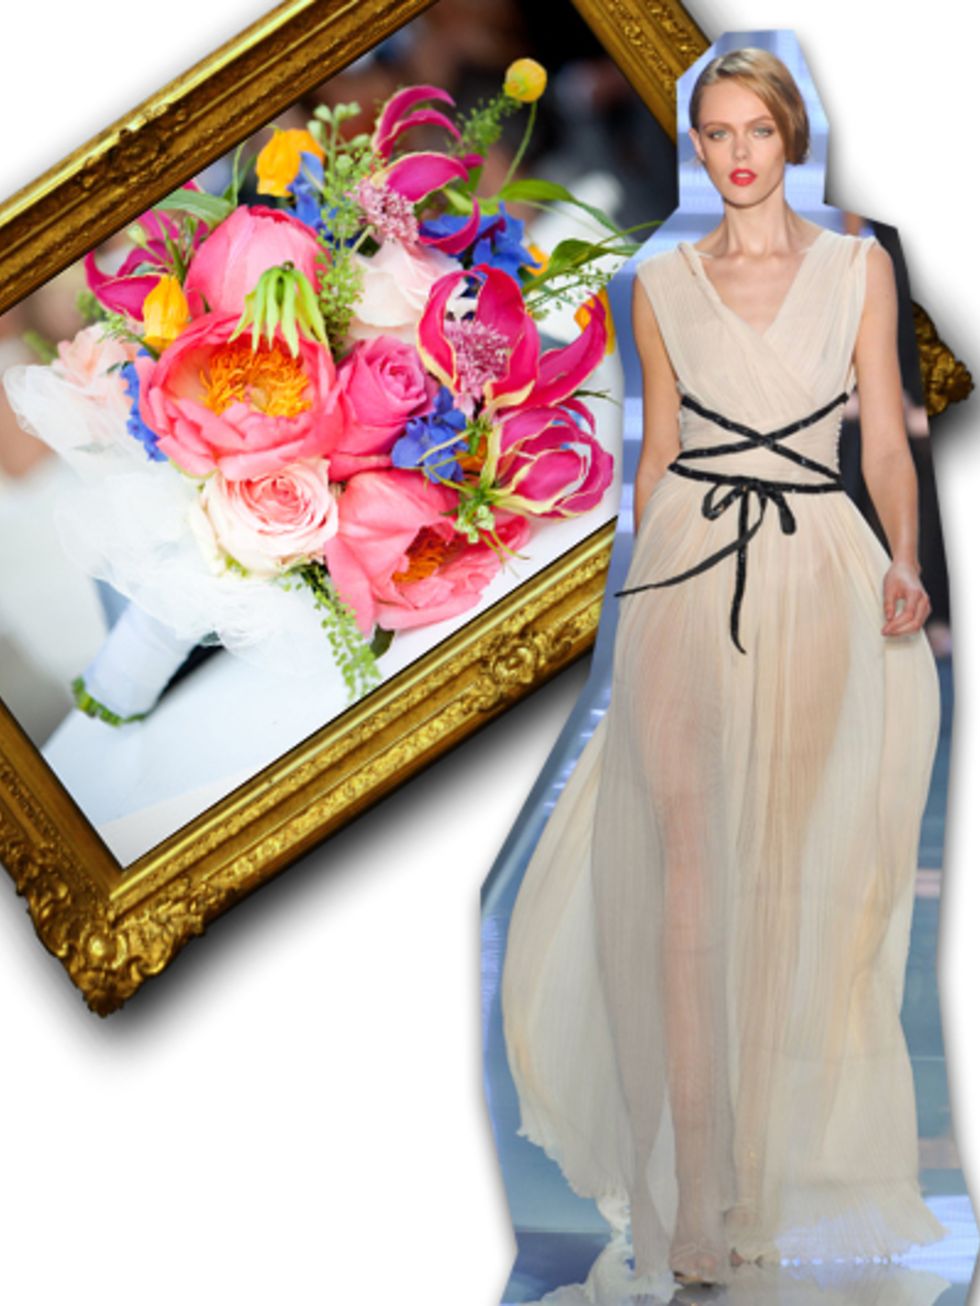 Petal, Dress, One-piece garment, Gown, Cut flowers, Day dress, Bouquet, Embellishment, Peach, Flower Arranging, 